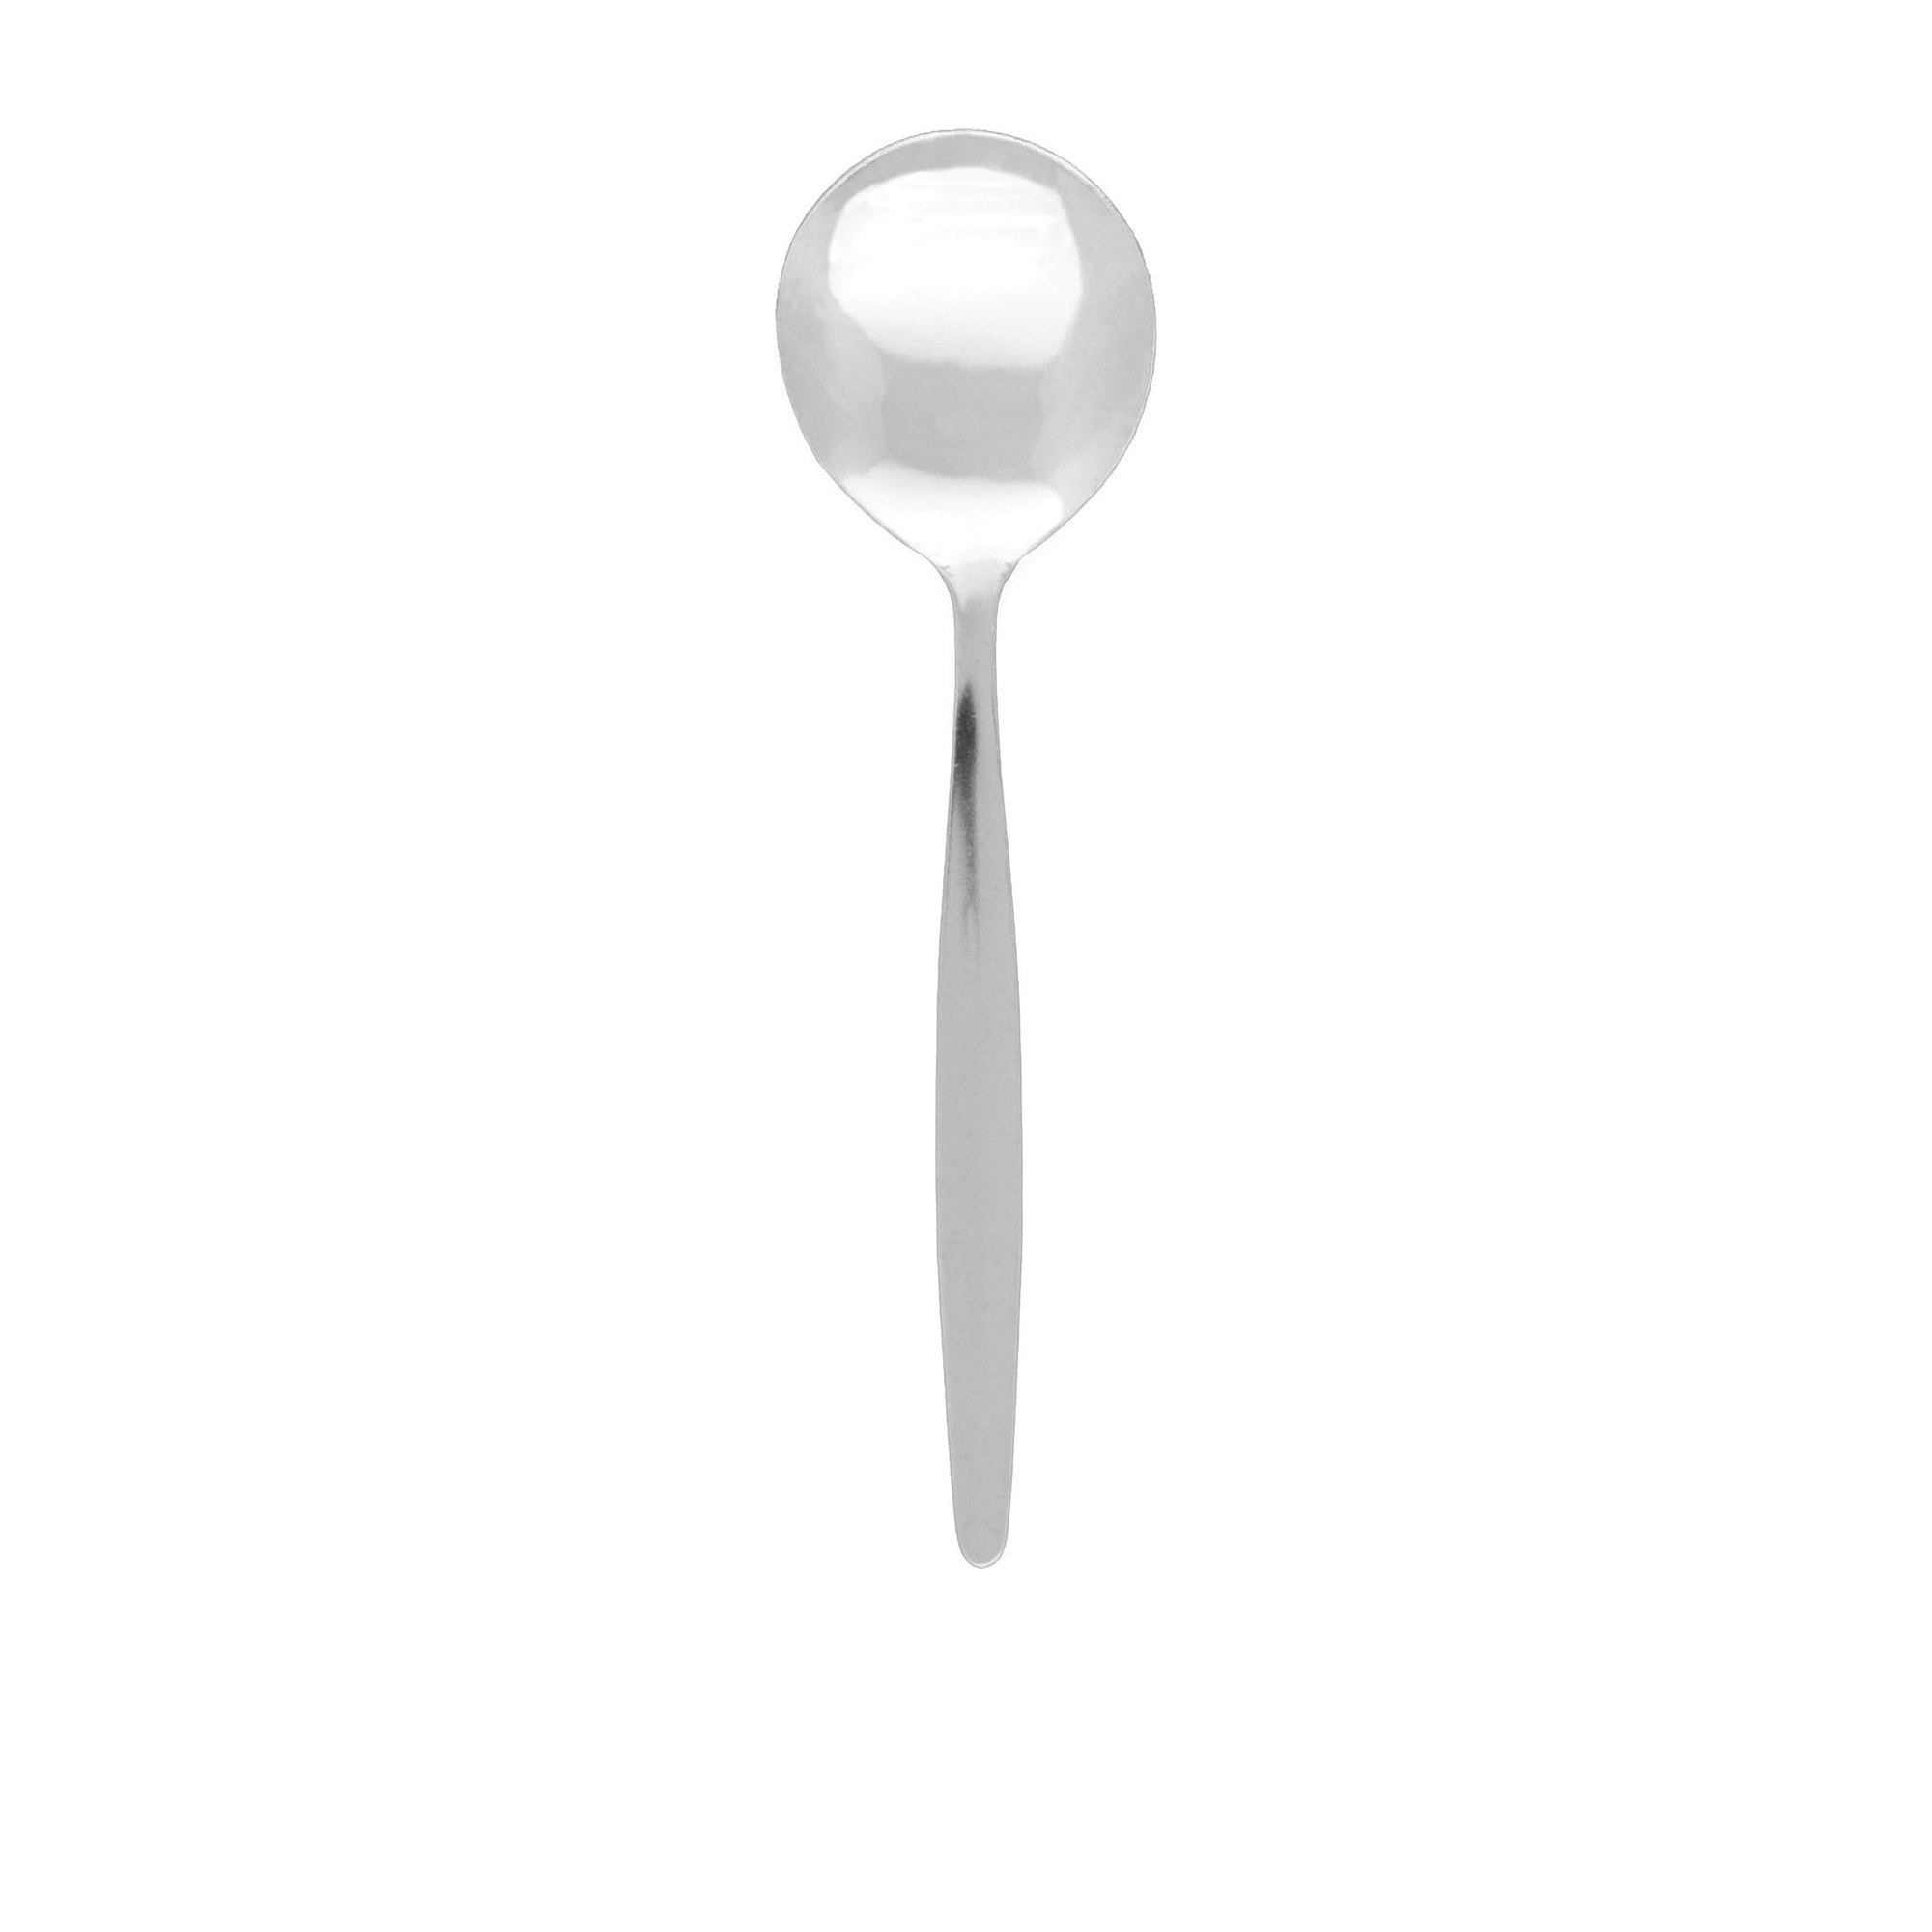 Tablekraft Austwind Soup Spoon Image 1